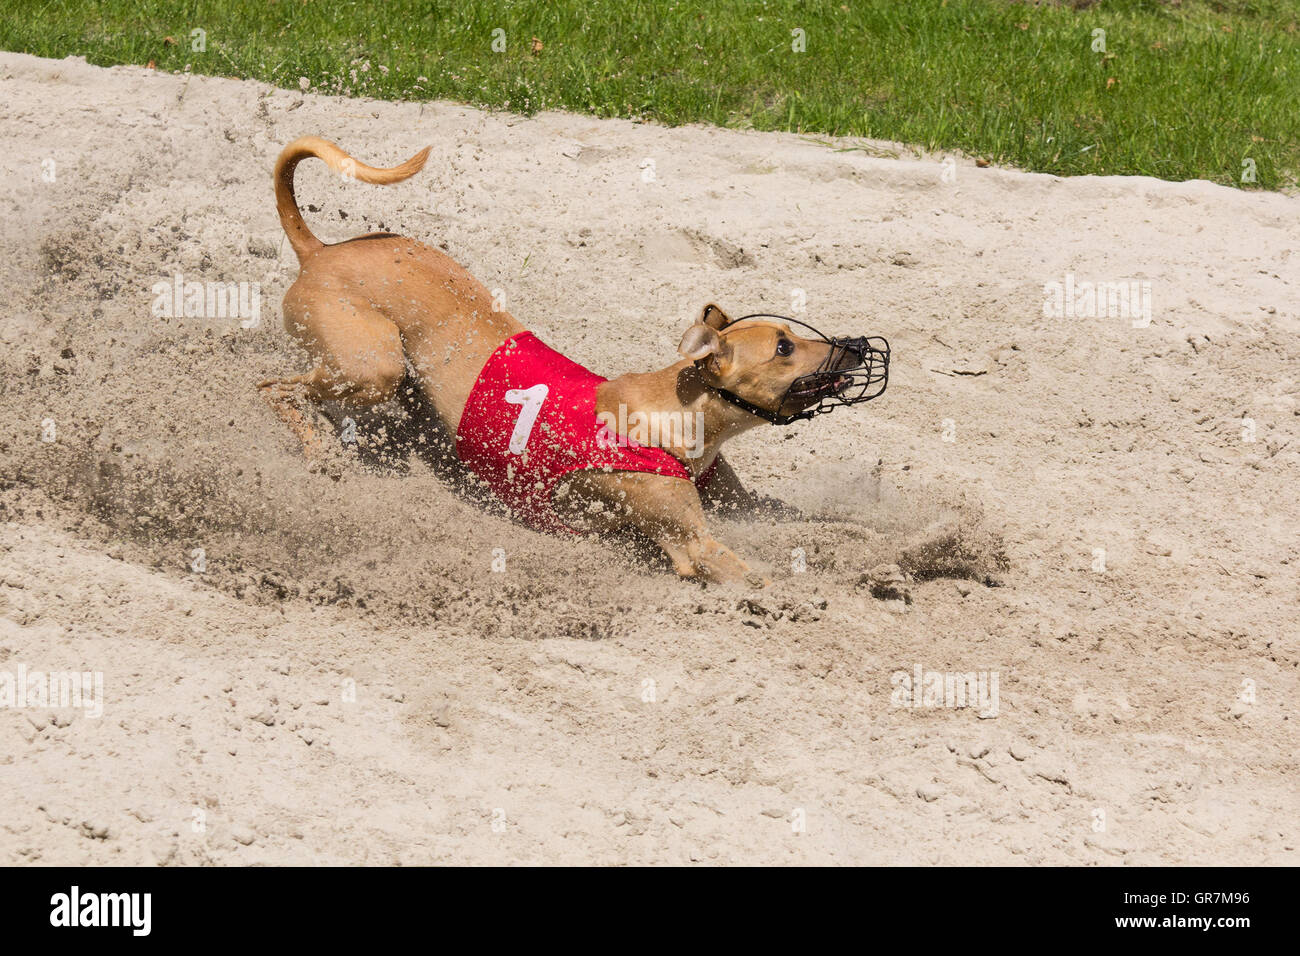 Greyhound in a sandbox Stock Photo